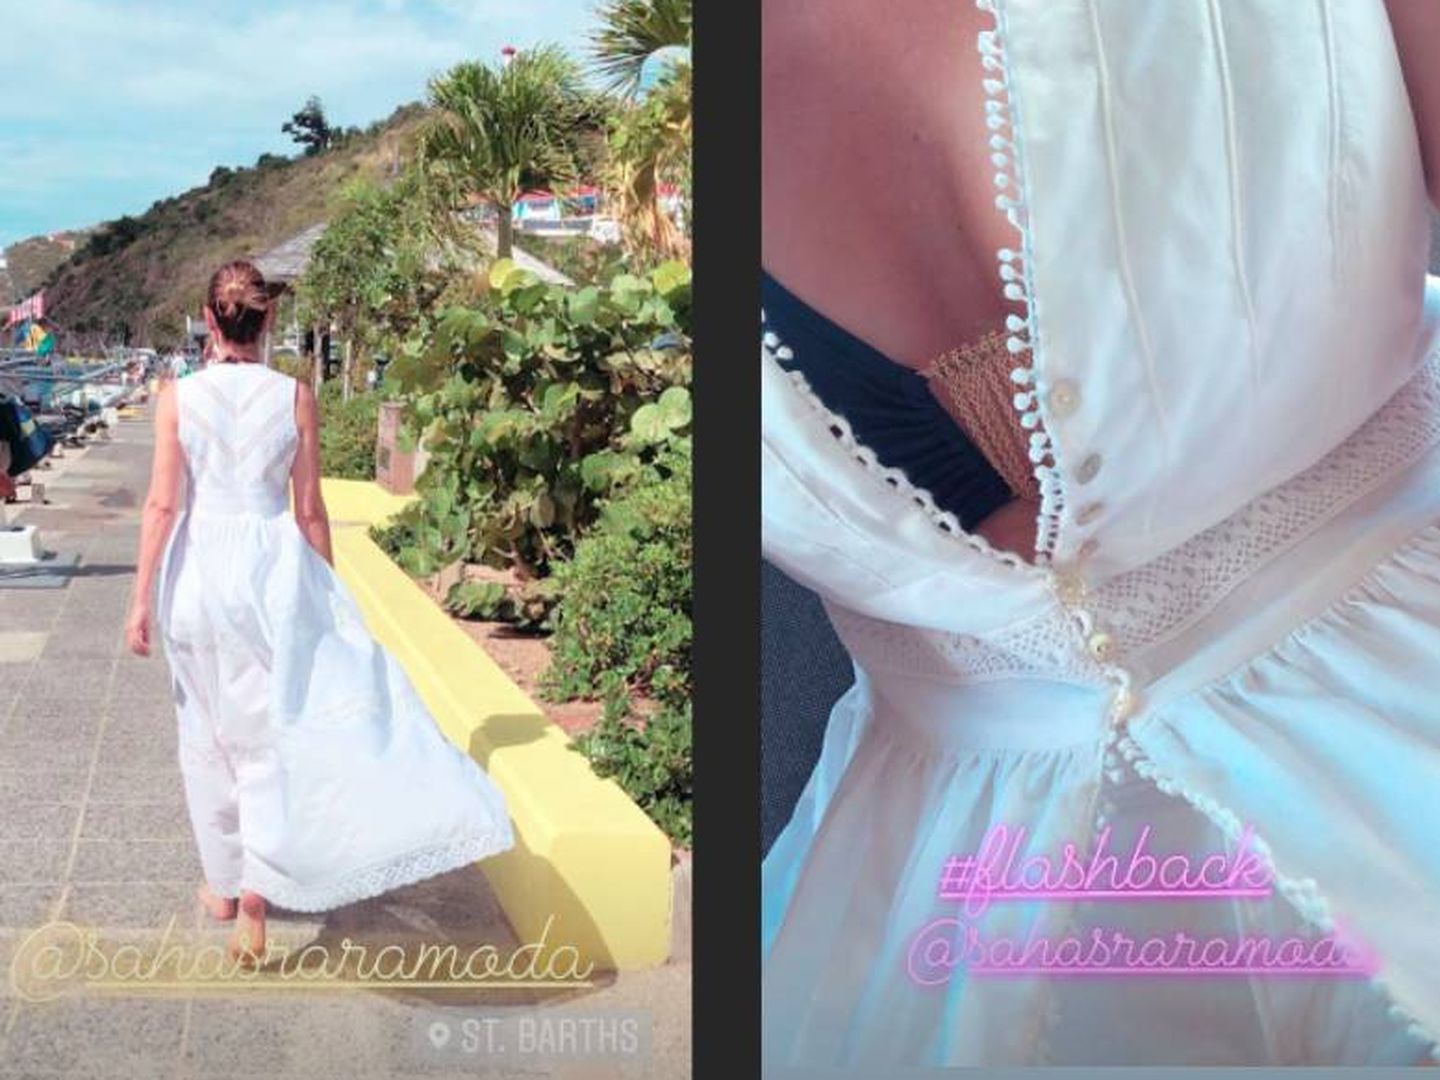 El look de Mar Flores al detalle en dos stories que la diseñadora ha subido a su perfil. (Instagram)